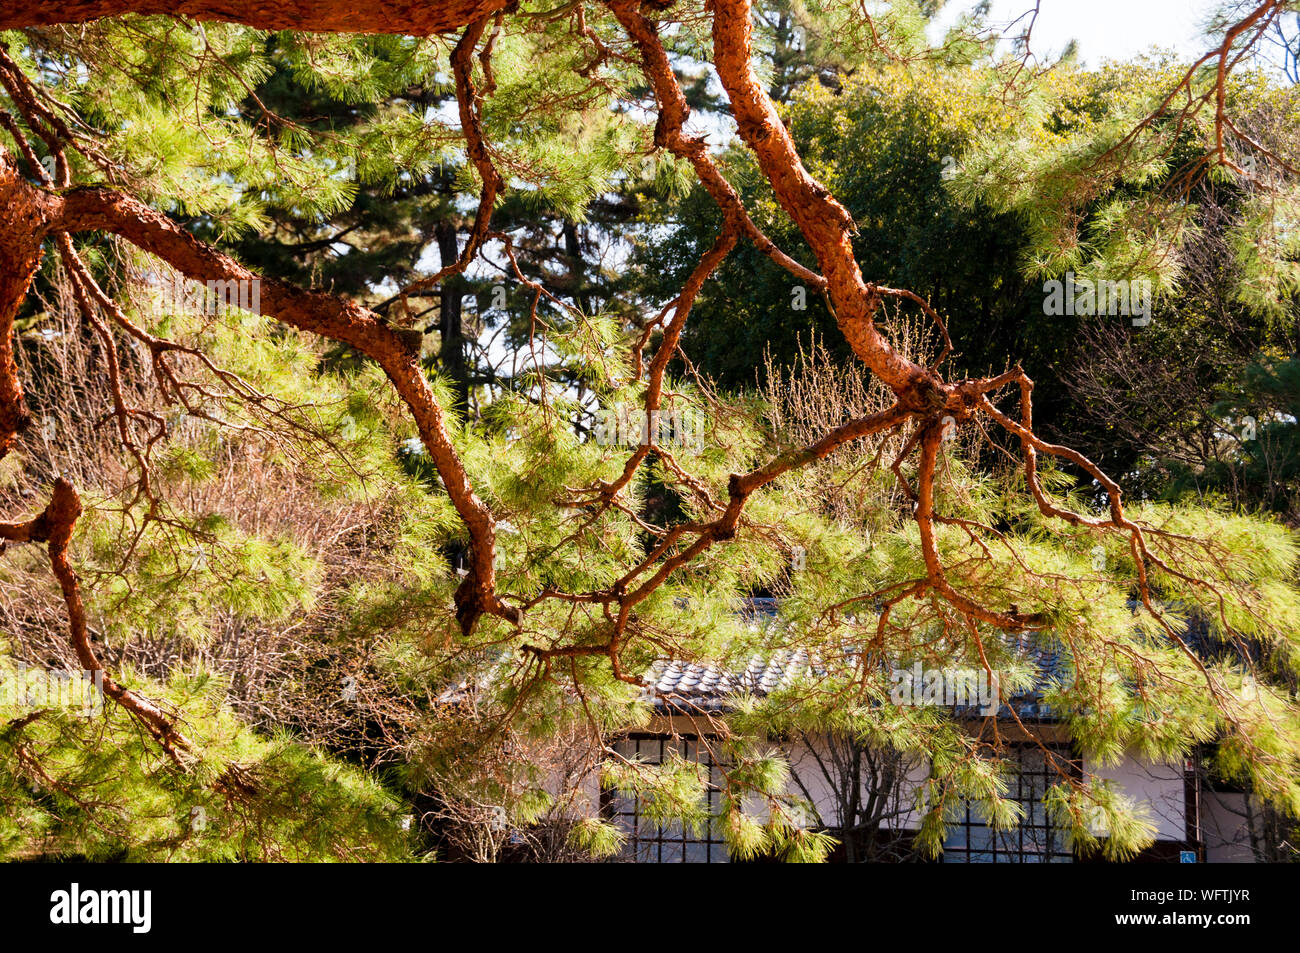 La venerazione di vecchi alberi in Giappone ha dato luogo ad un crutch per gli alberi a Kyoto con sia l'timore per l'albero invecchiato che la cautela per gli spiriti dell'albero. Foto Stock